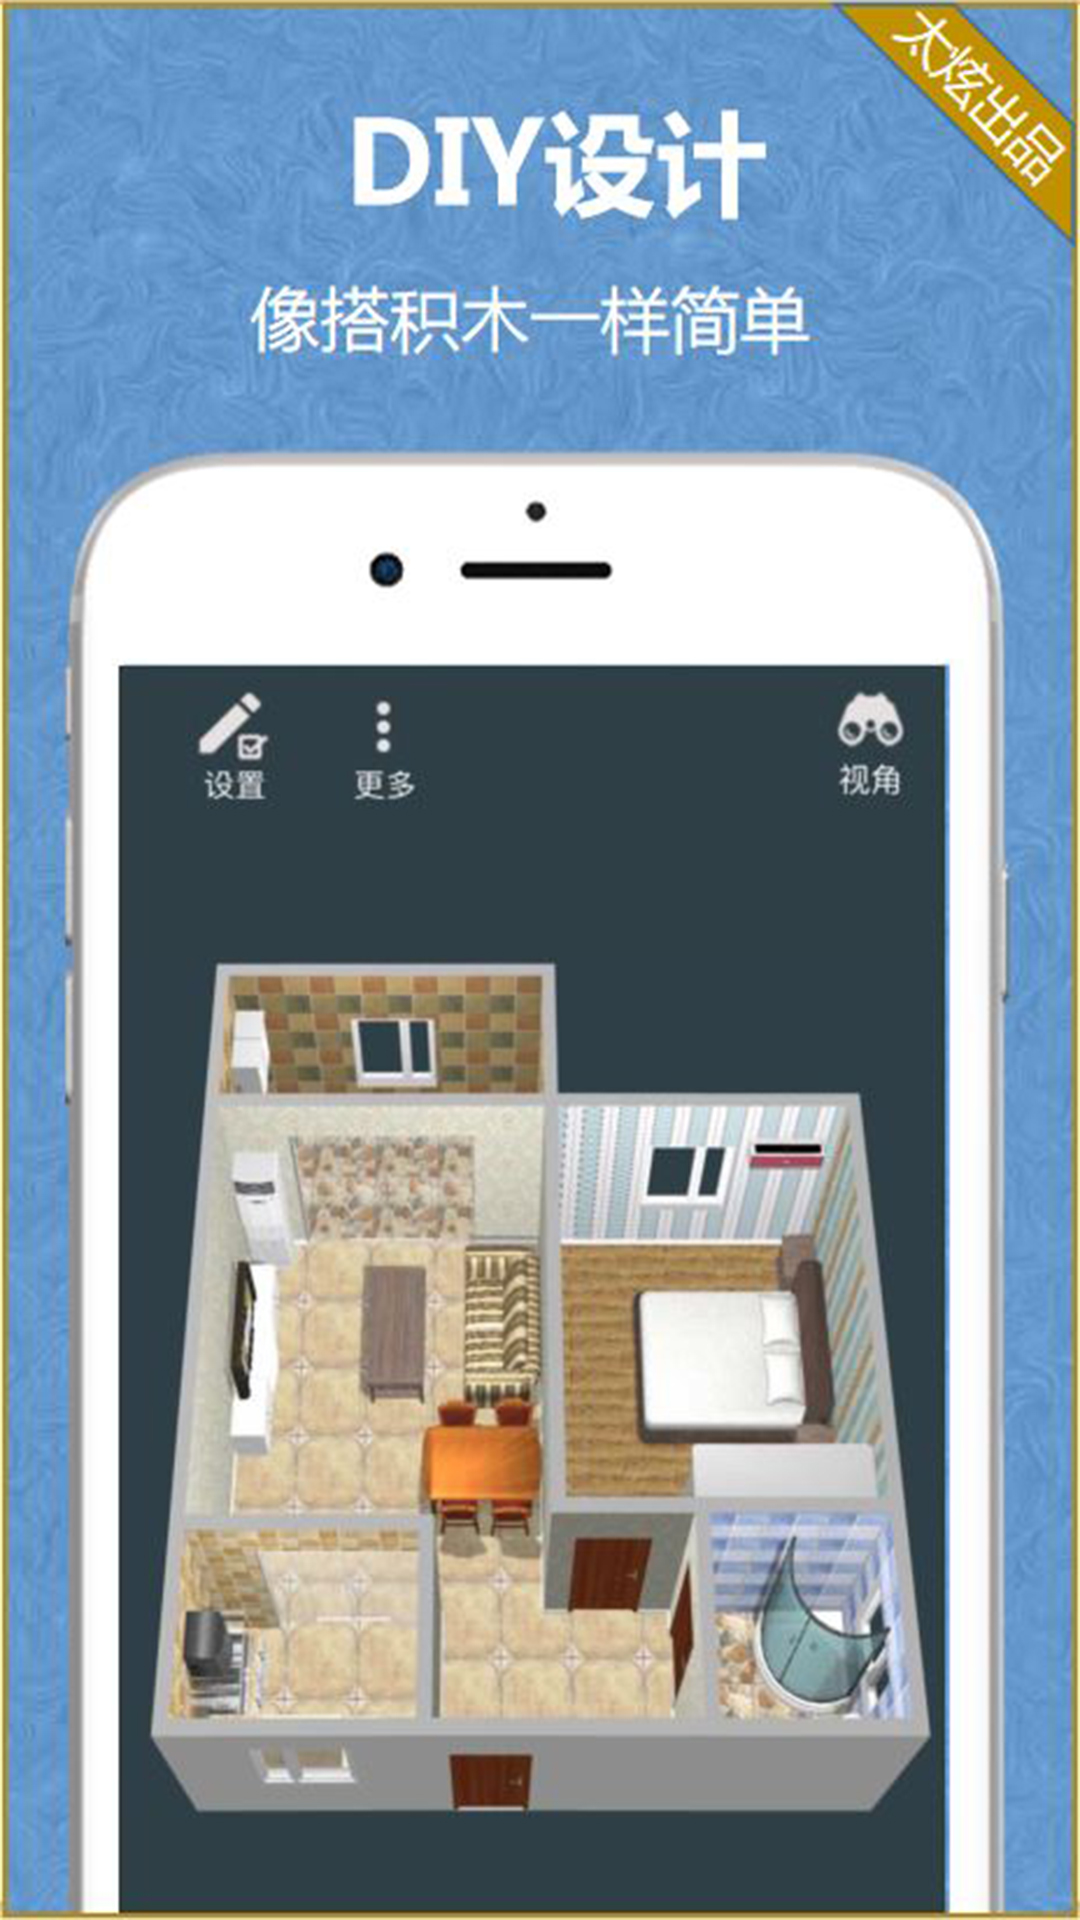 家炫-DIY房屋设计v1.0.52截图1